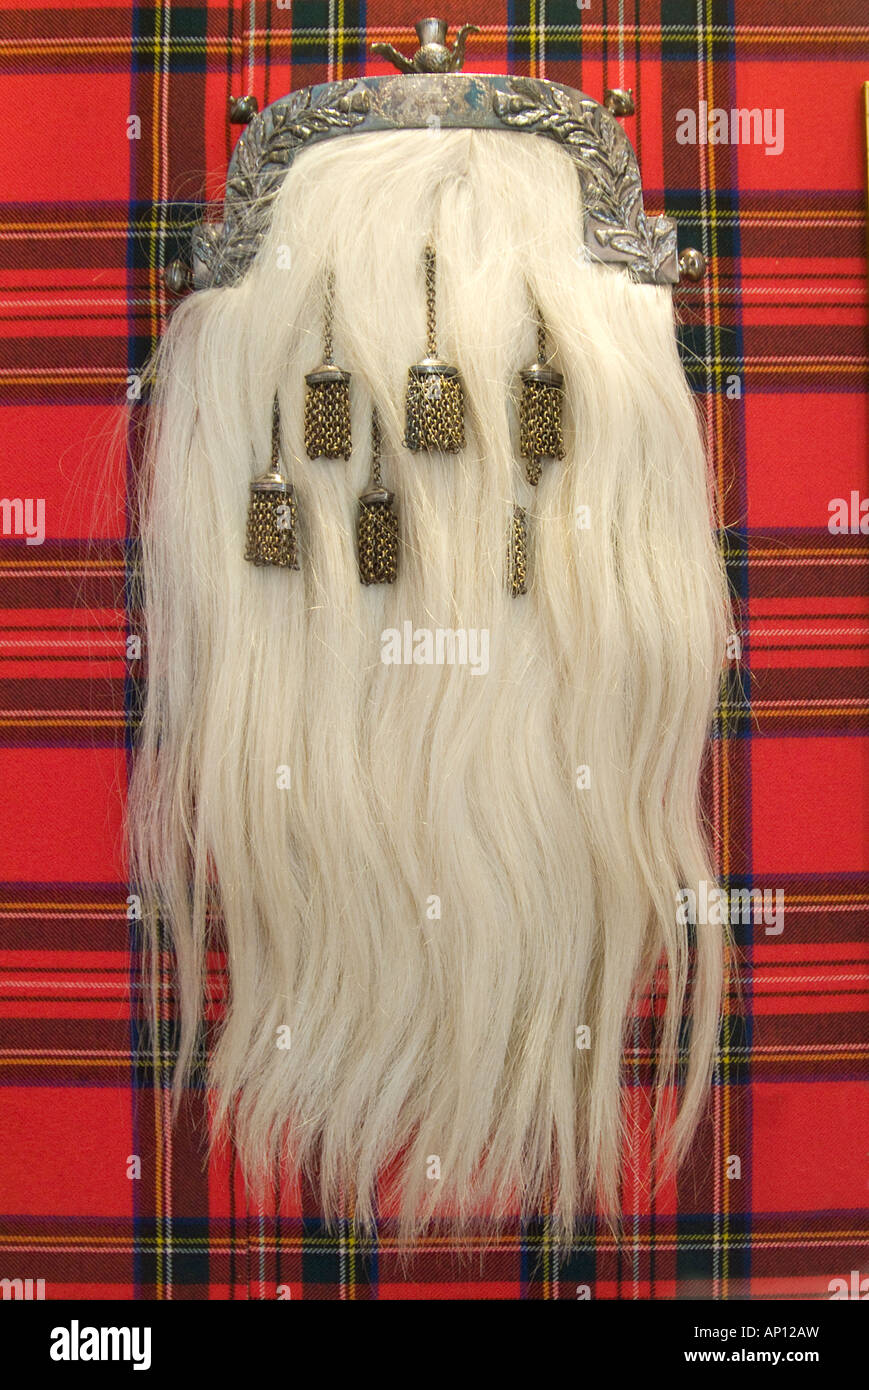 Pochette rangement robe sac tartan écossais à carreaux décoratifs ornés d'argent contrôle cheveux antique old Highland dress everyd Banque D'Images